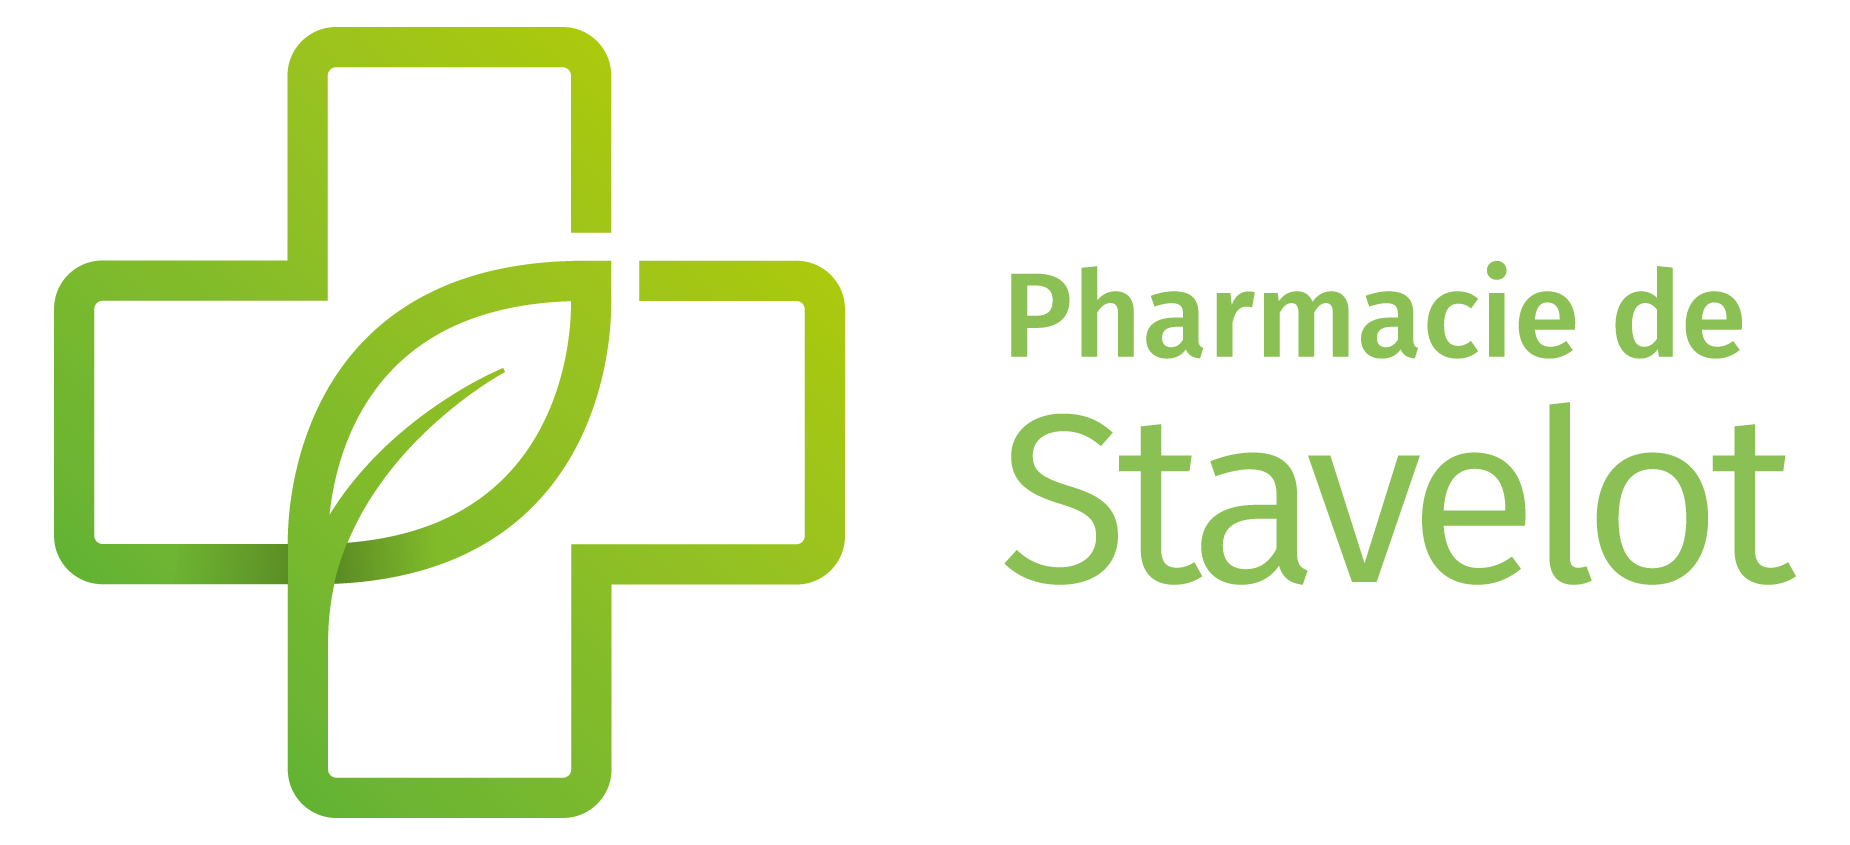 Pharmacie de Stavelot spécialisée en homéopathie